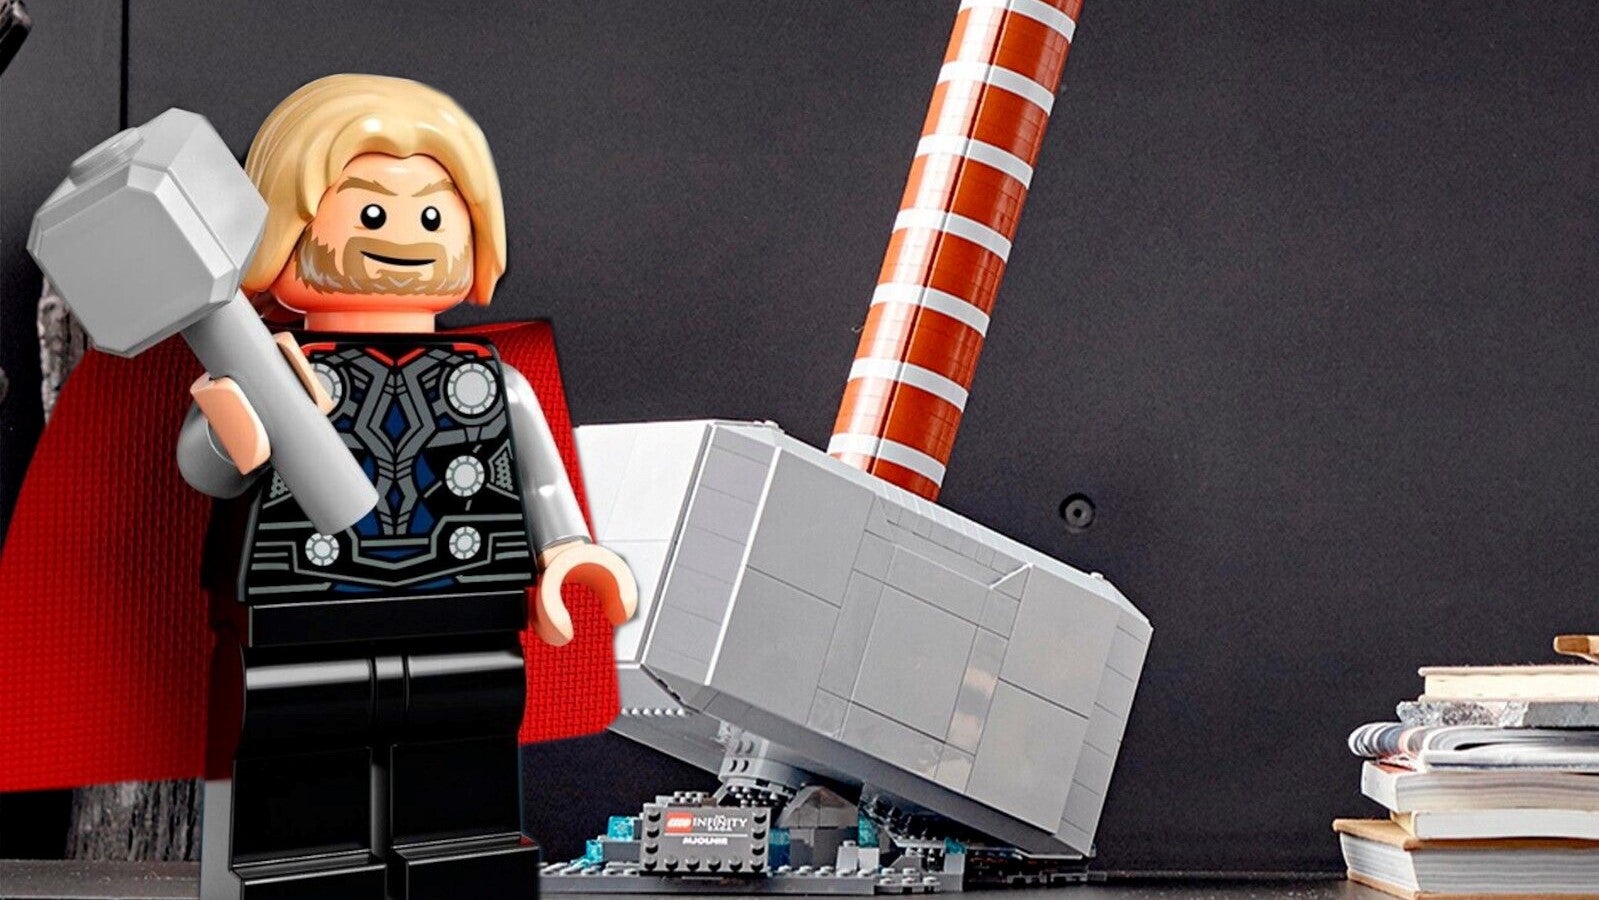 Bilder zu Thors Hammer von Lego reduziert: Dieses Angebot schlägt ein wie ein Blitz